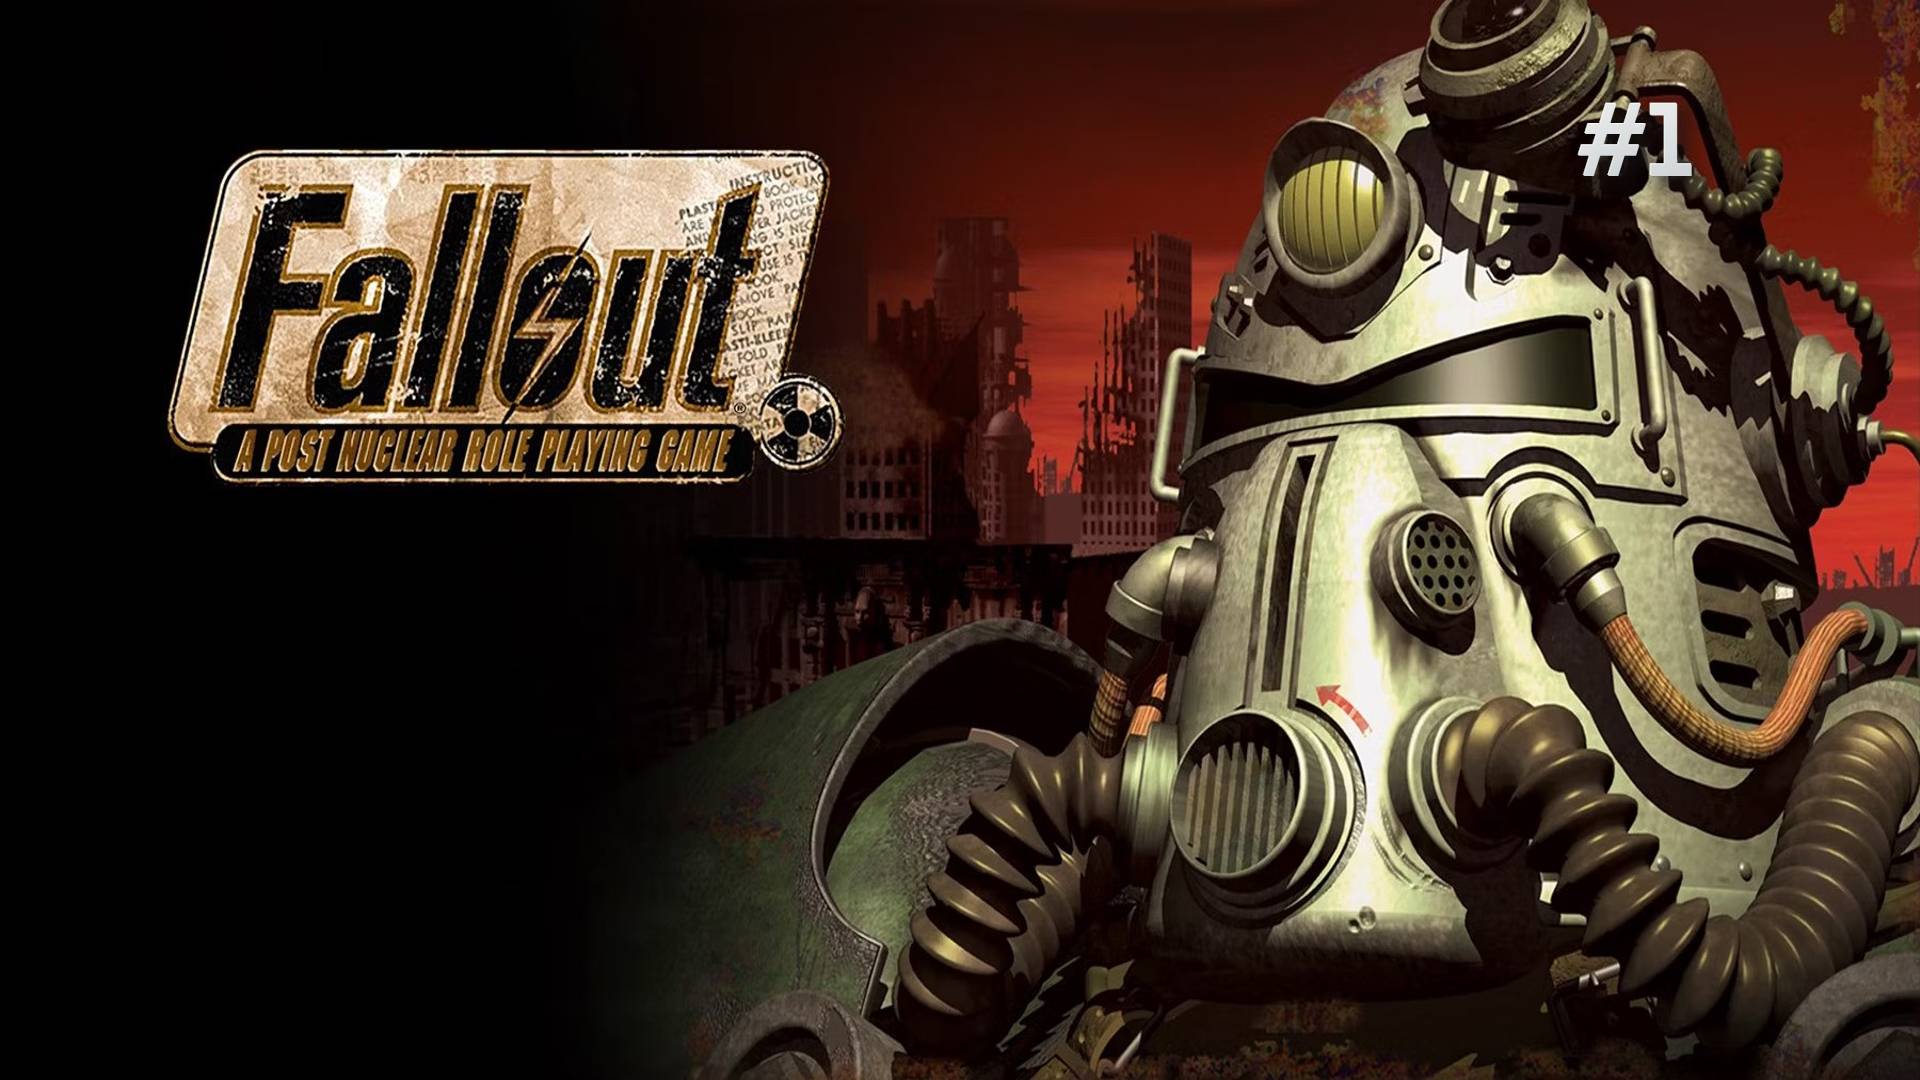 Жизнь в пост ядерном мире (Fallout) ep.1